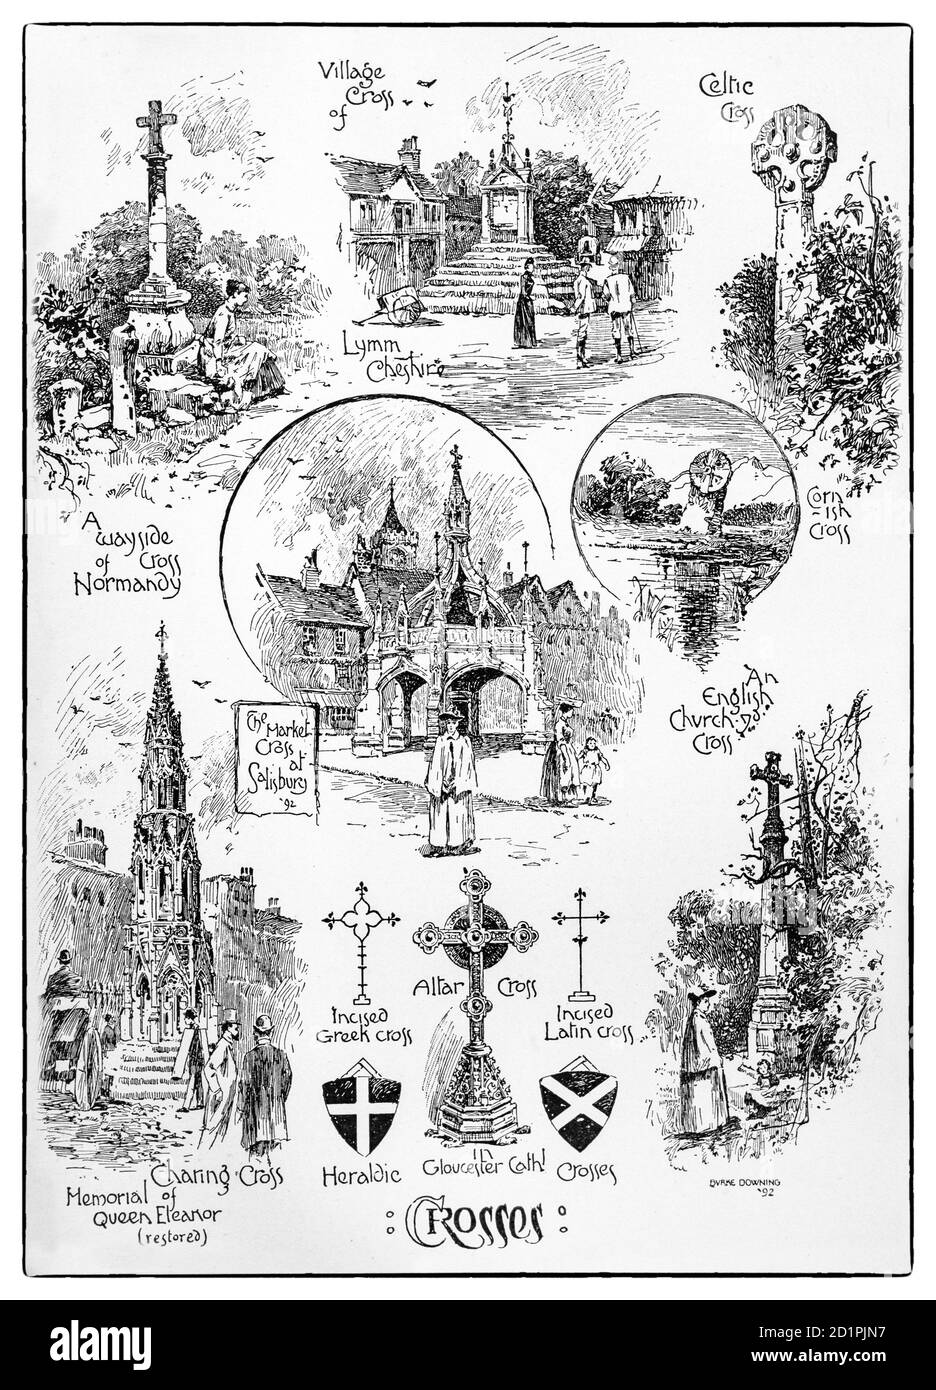 Eine Collage aus dekorativen architektonischen Kreuzen aus dem späten 19. Jahrhundert in Städten und Dörfern in ganz Großbritannien. Stockfoto